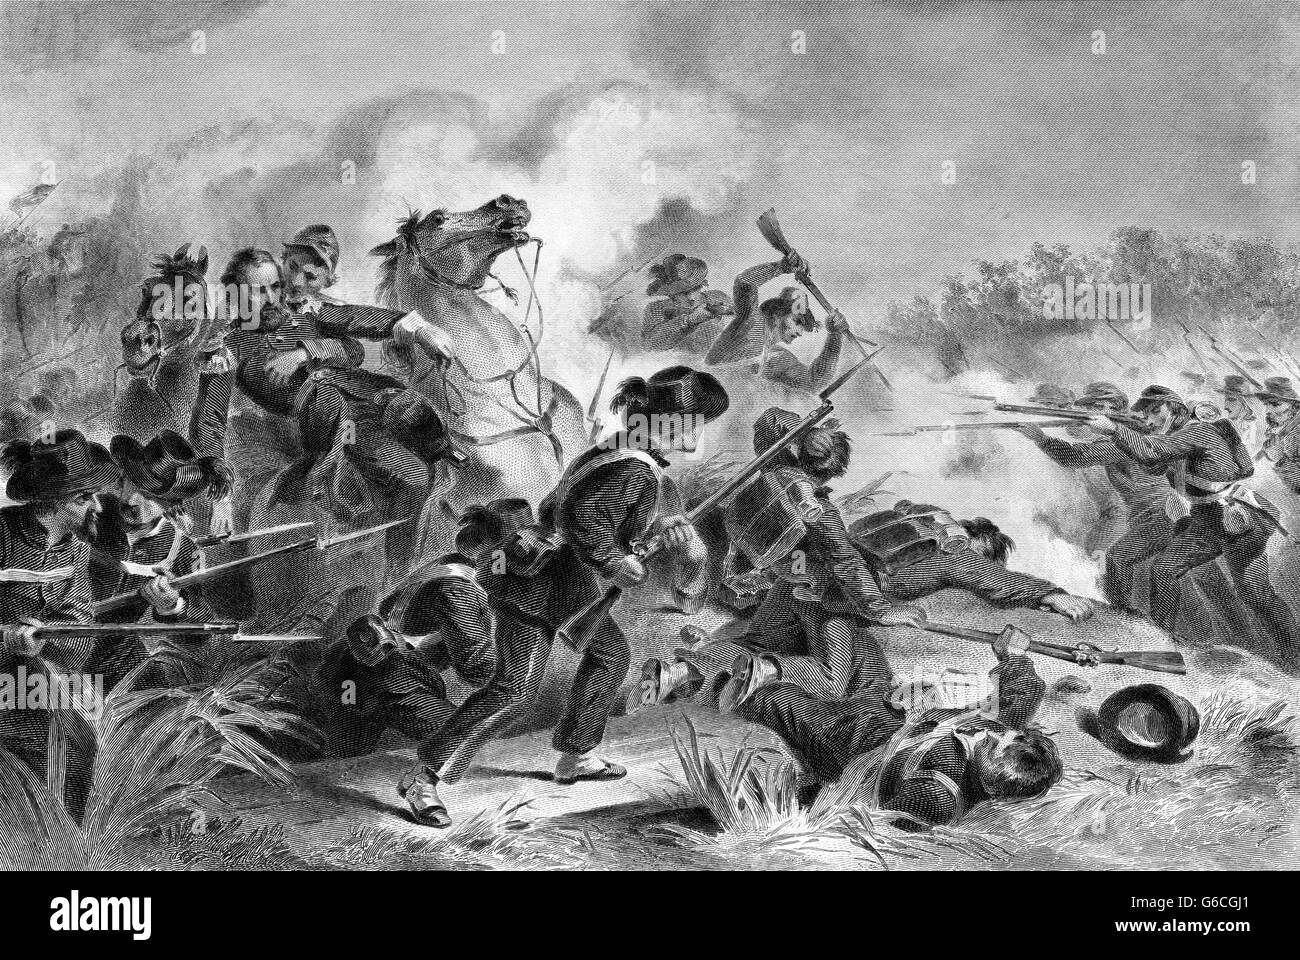 1860 août 1861 BATAILLE DE WILSON'S CREEK ET LA MORT DU GÉNÉRAL LYON PRÈS DE SPRINGFIELD MISSOURI USA Banque D'Images